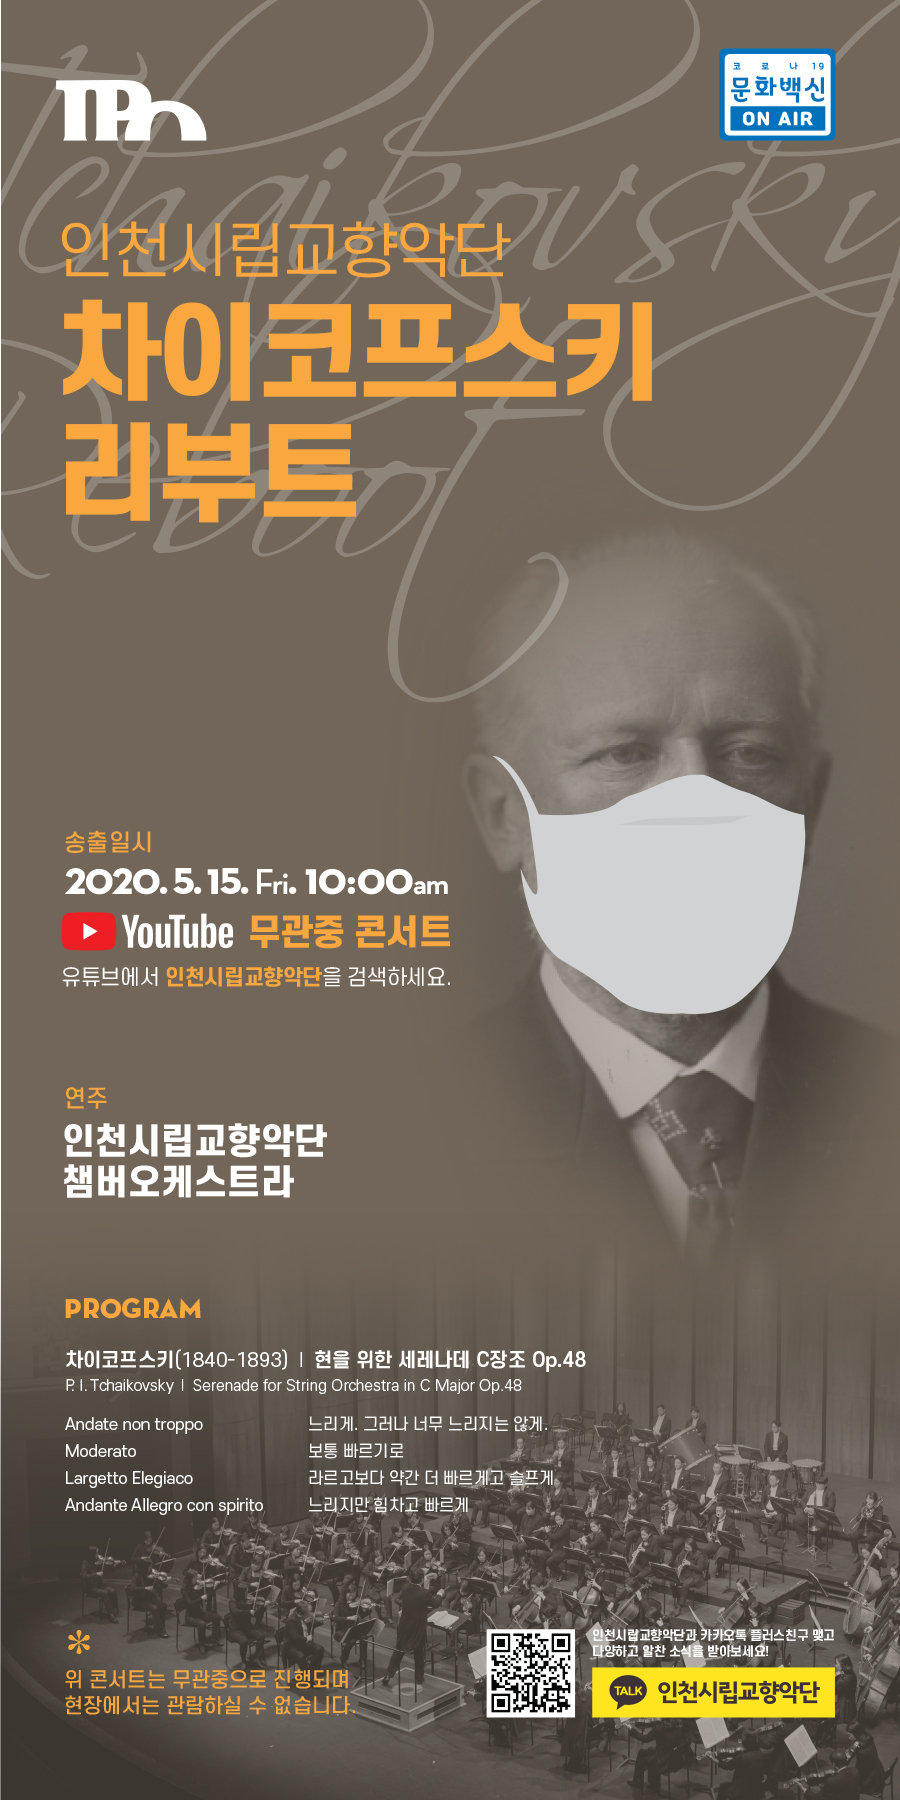 인천시립교향악단 차이코프스키리부트 포스터(자세한 내용은 아래)